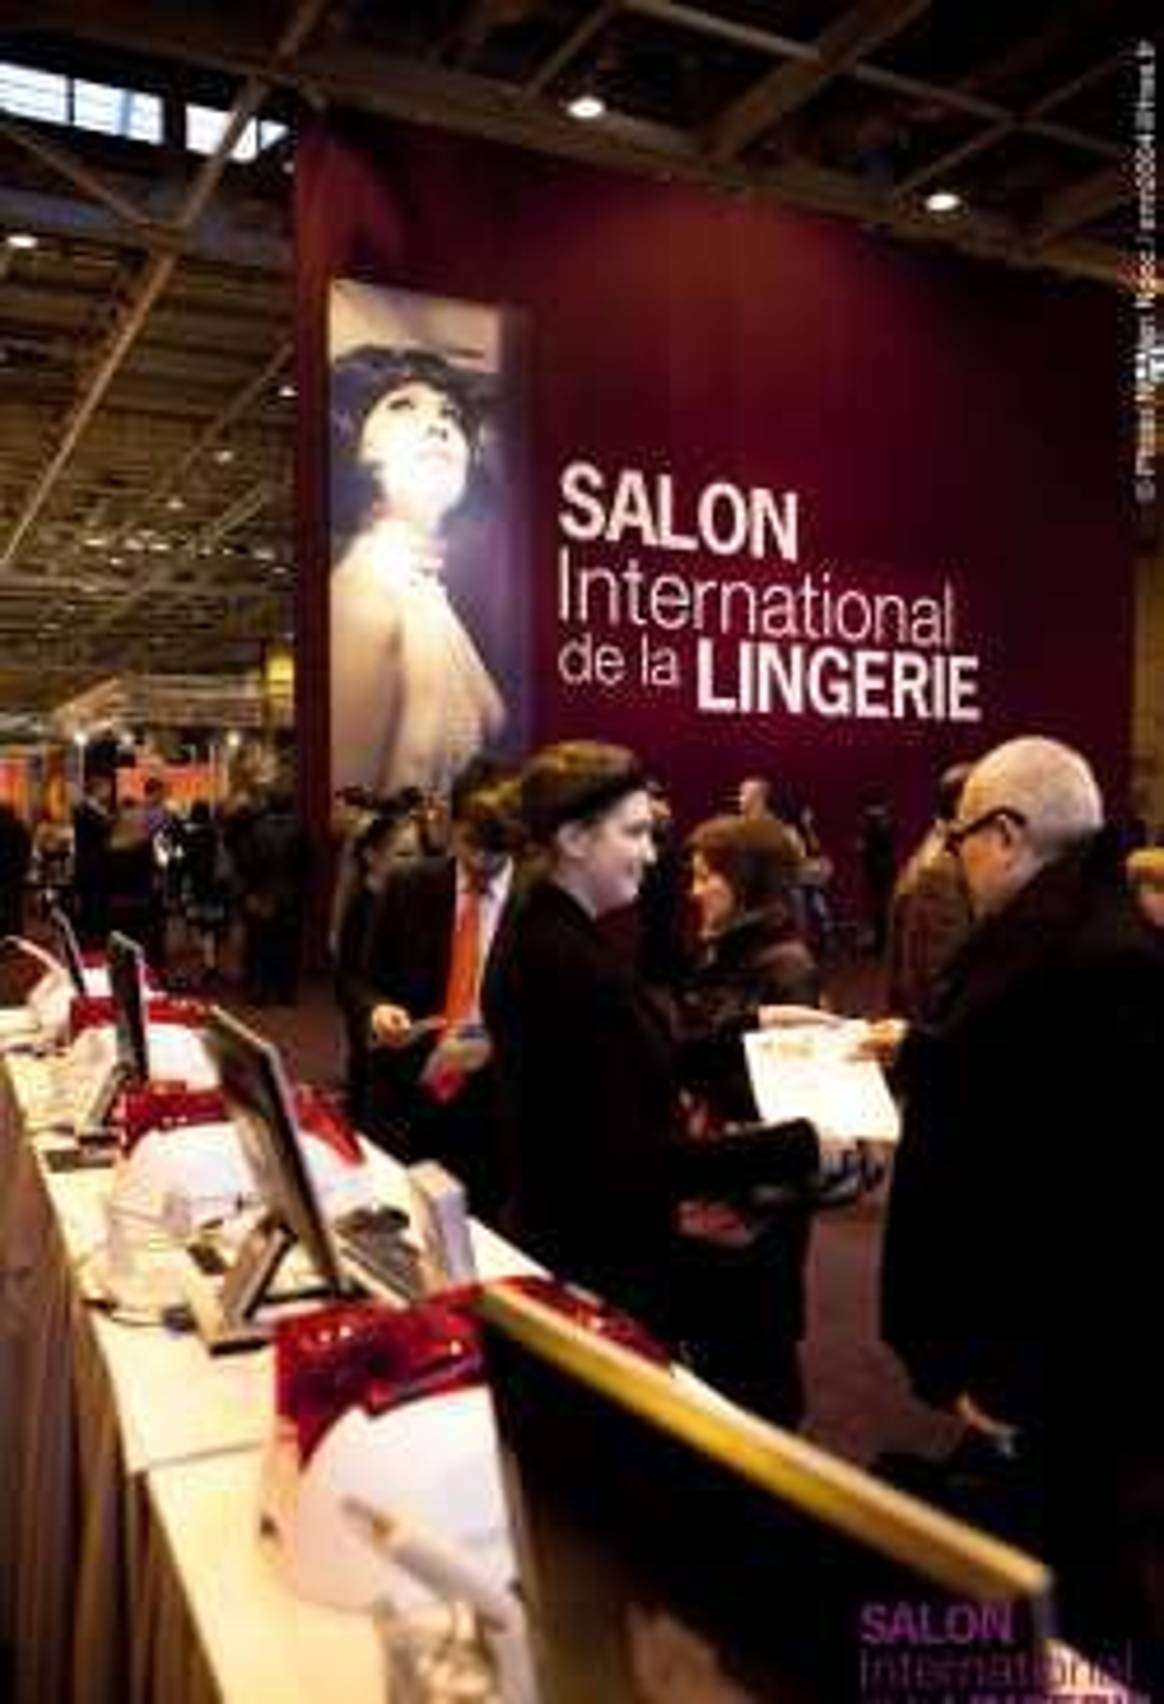 Salones parisinos: un buen año 2010